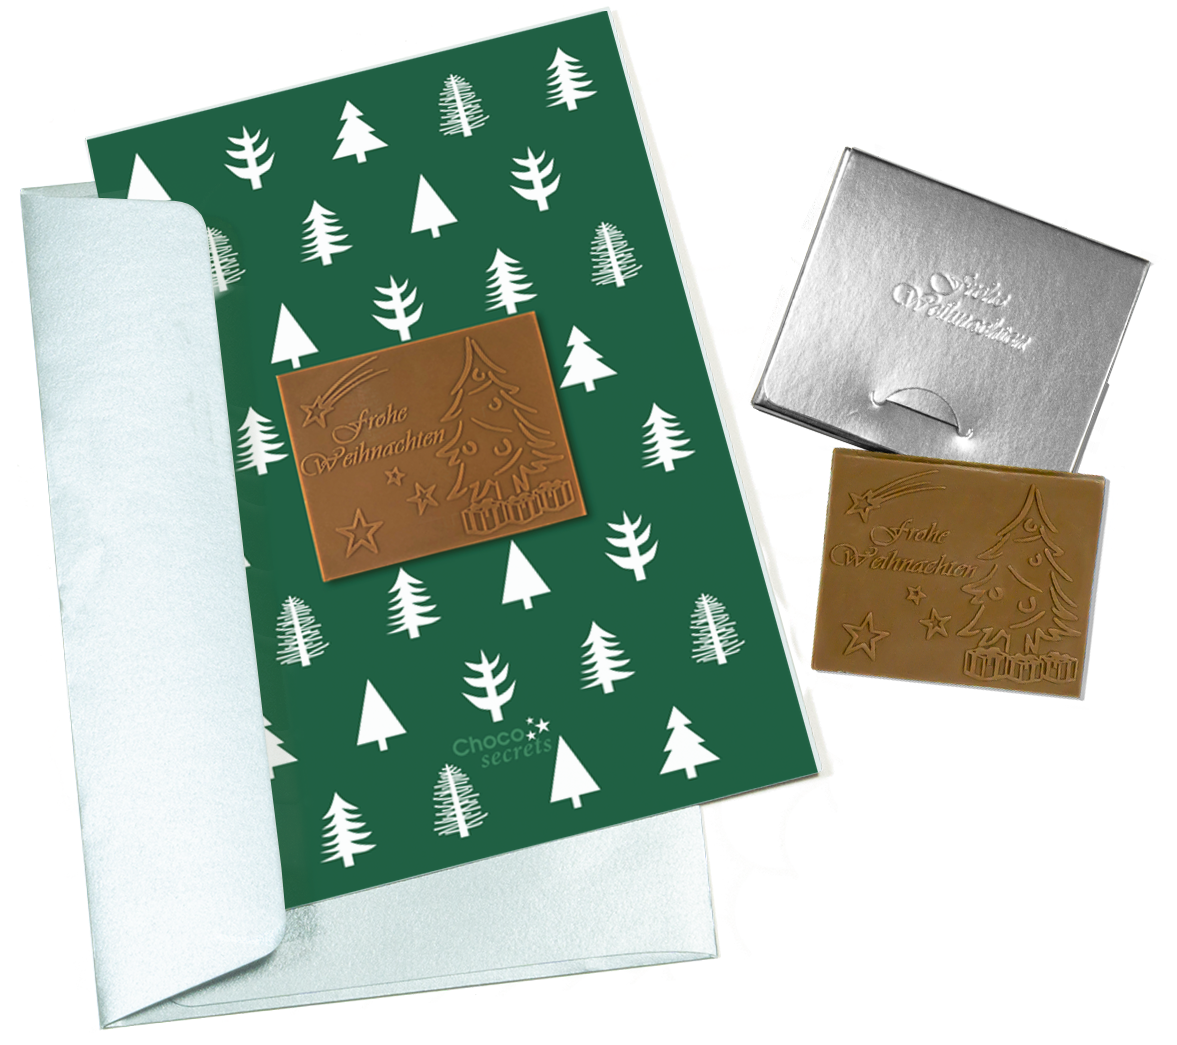 Cartes de Noël avec chocolat en relief dans une boîte en argent, lot de 5, motif de carte : vert avec des arbres, chocolat en relief : "Frohe Weihnachten", enveloppe en argent 